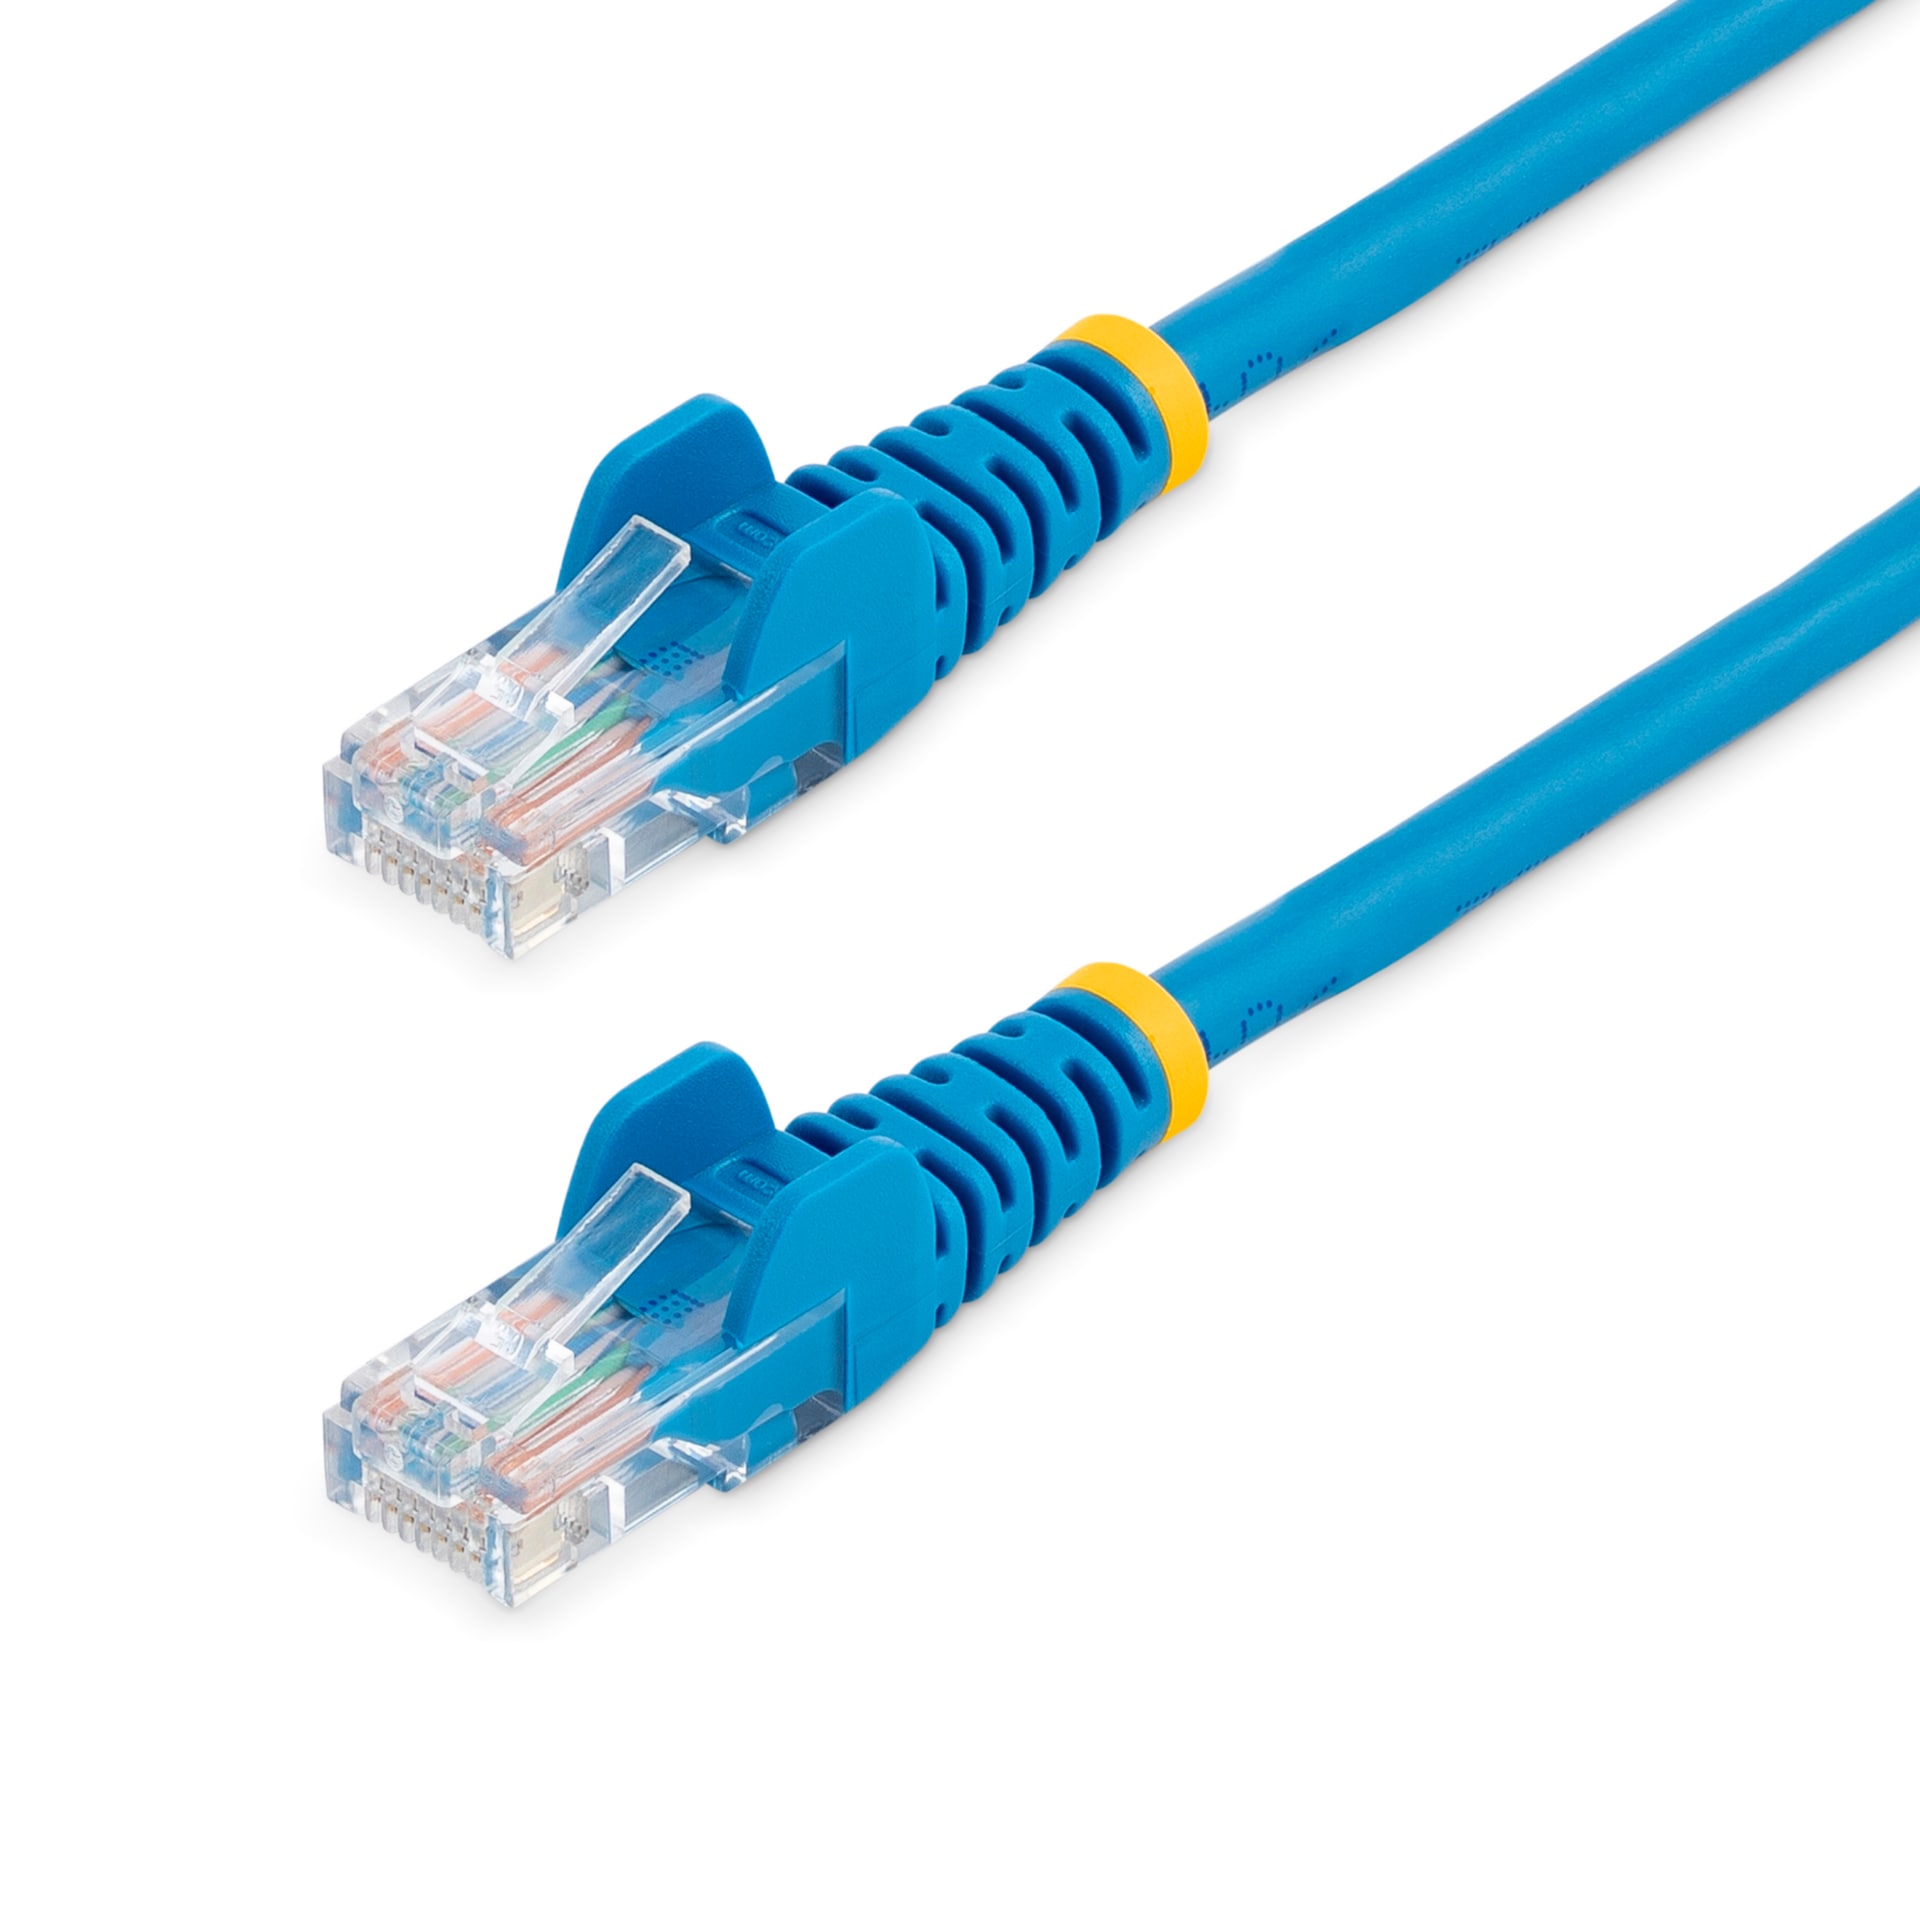 StarTech.com Cat5e Ethernet Cable 25 ft Blue - Cat 5e Snagless Patch Cable